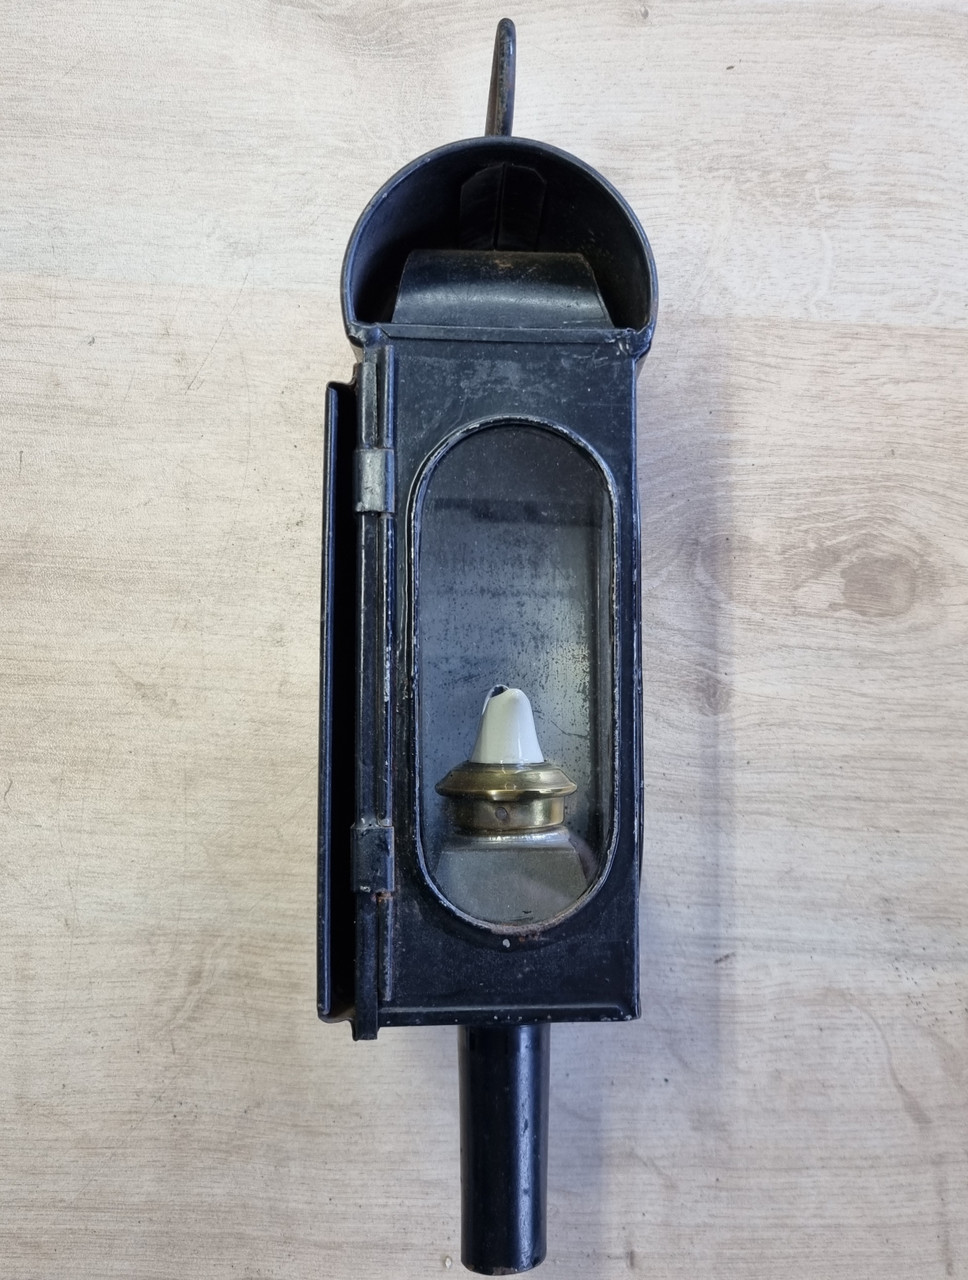 VT 5775 LNER PATTERN LOCOMOTIVE GAUGE FRAME LAMP